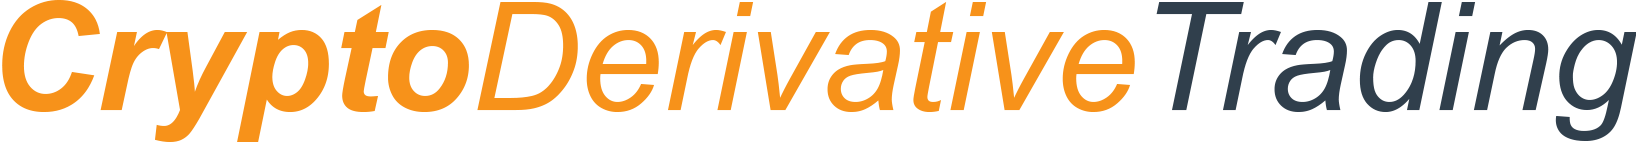 cryptoderivatives logo